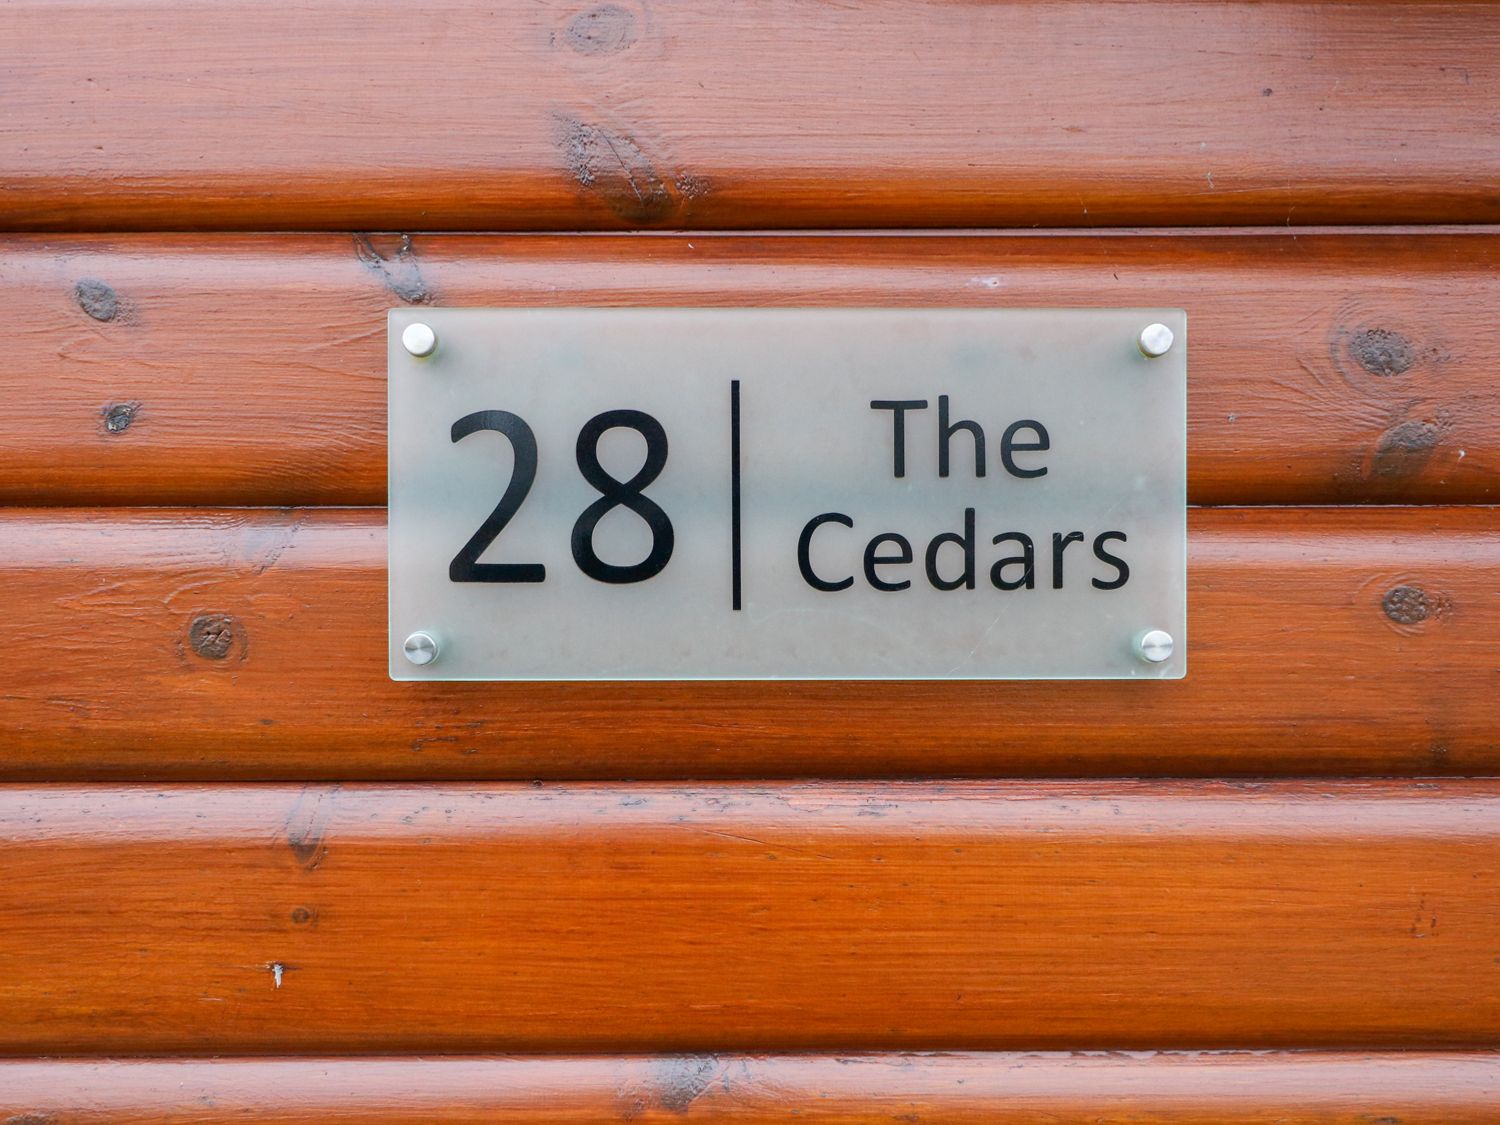 The Cedars, Lancashire